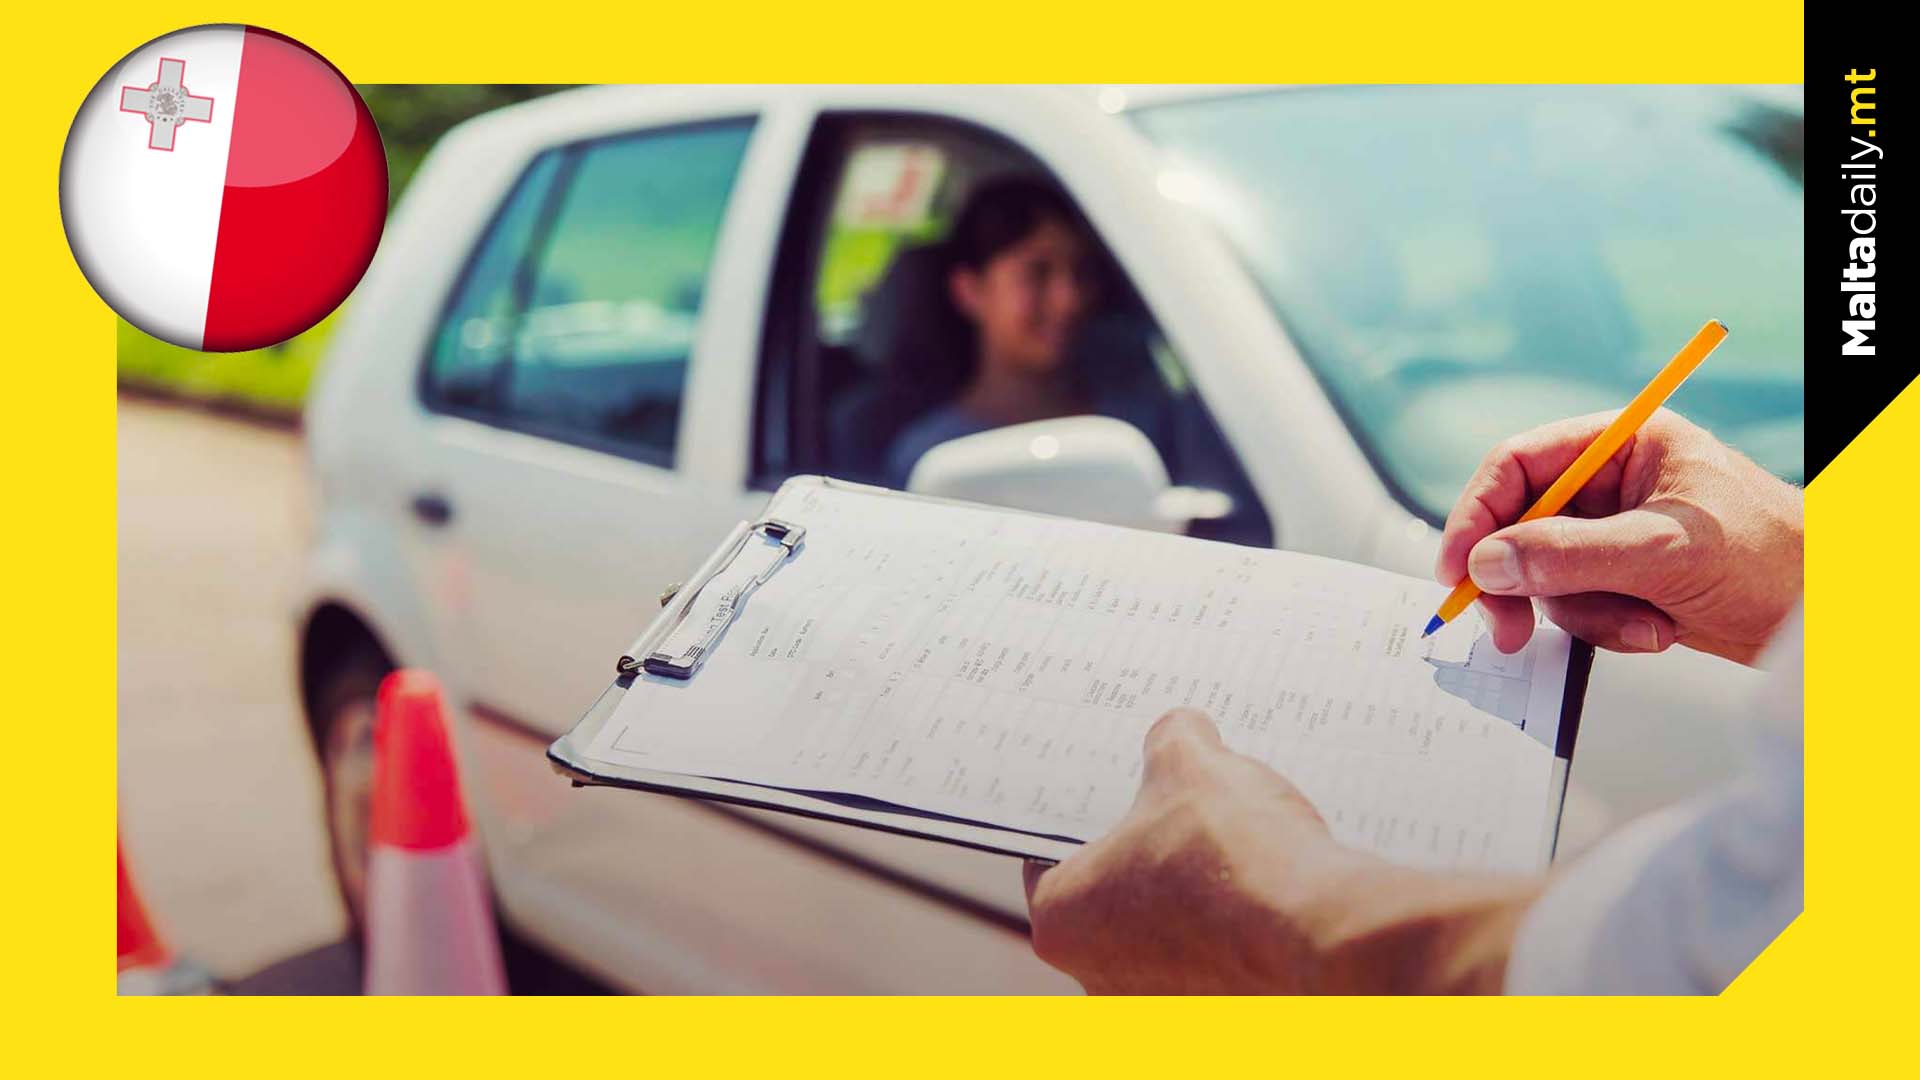 23,372 non-EU citizens have a valid Maltese driving license